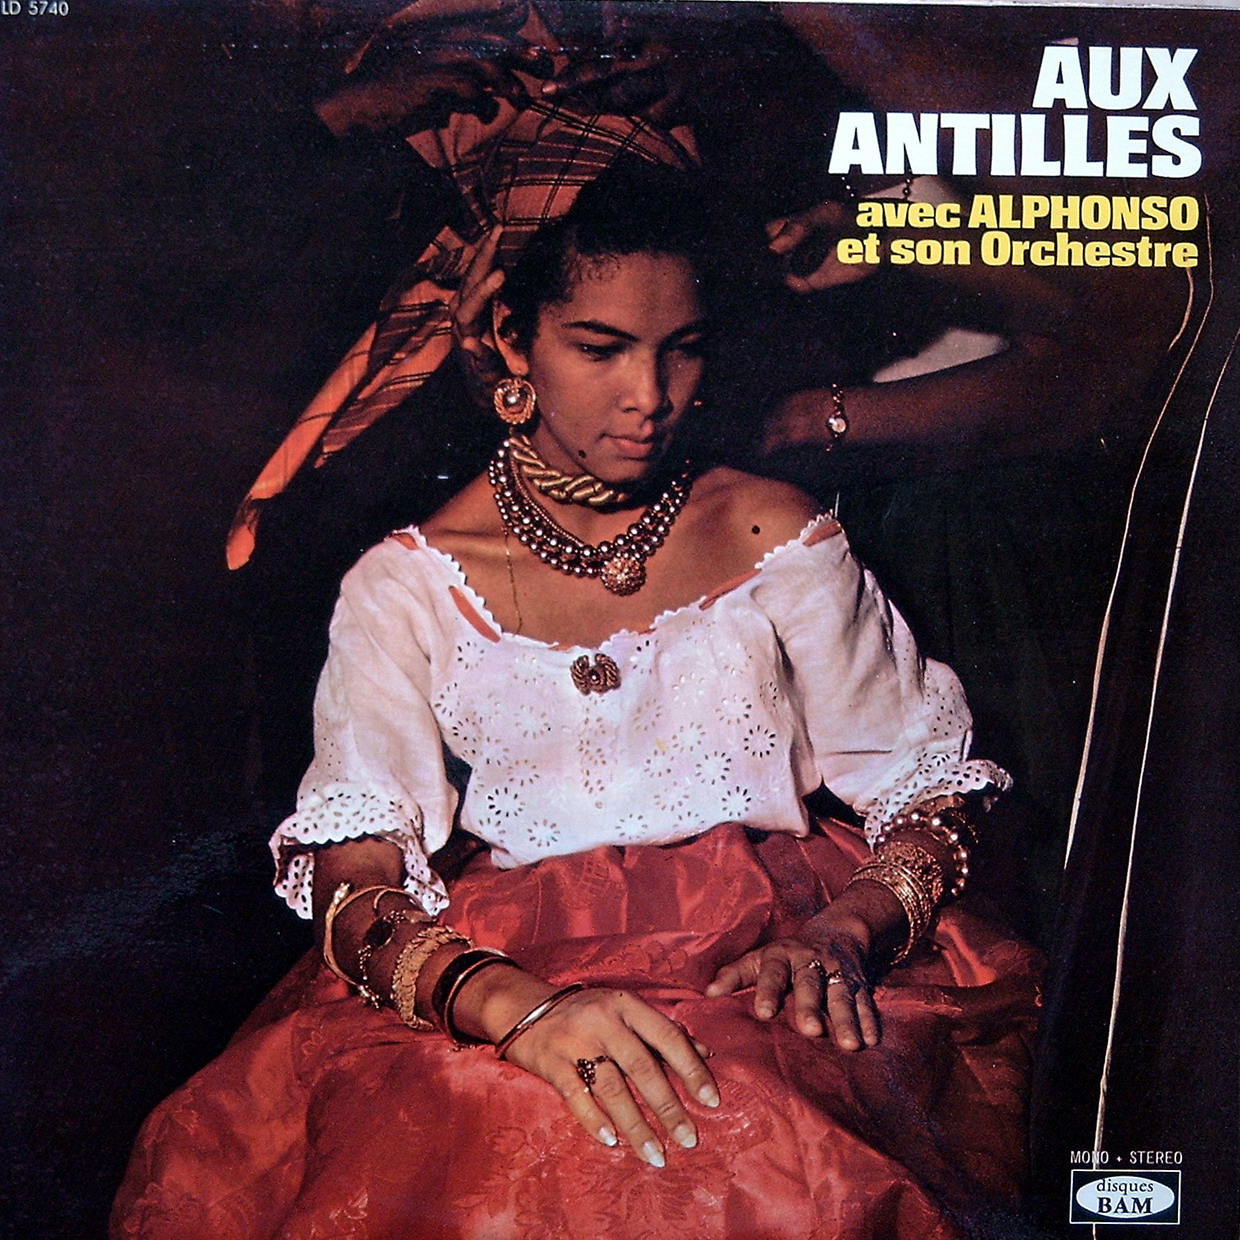 Alphonso - Fete aux Antilles Vol.2 (1971)(Vinil rip) Ld+5740